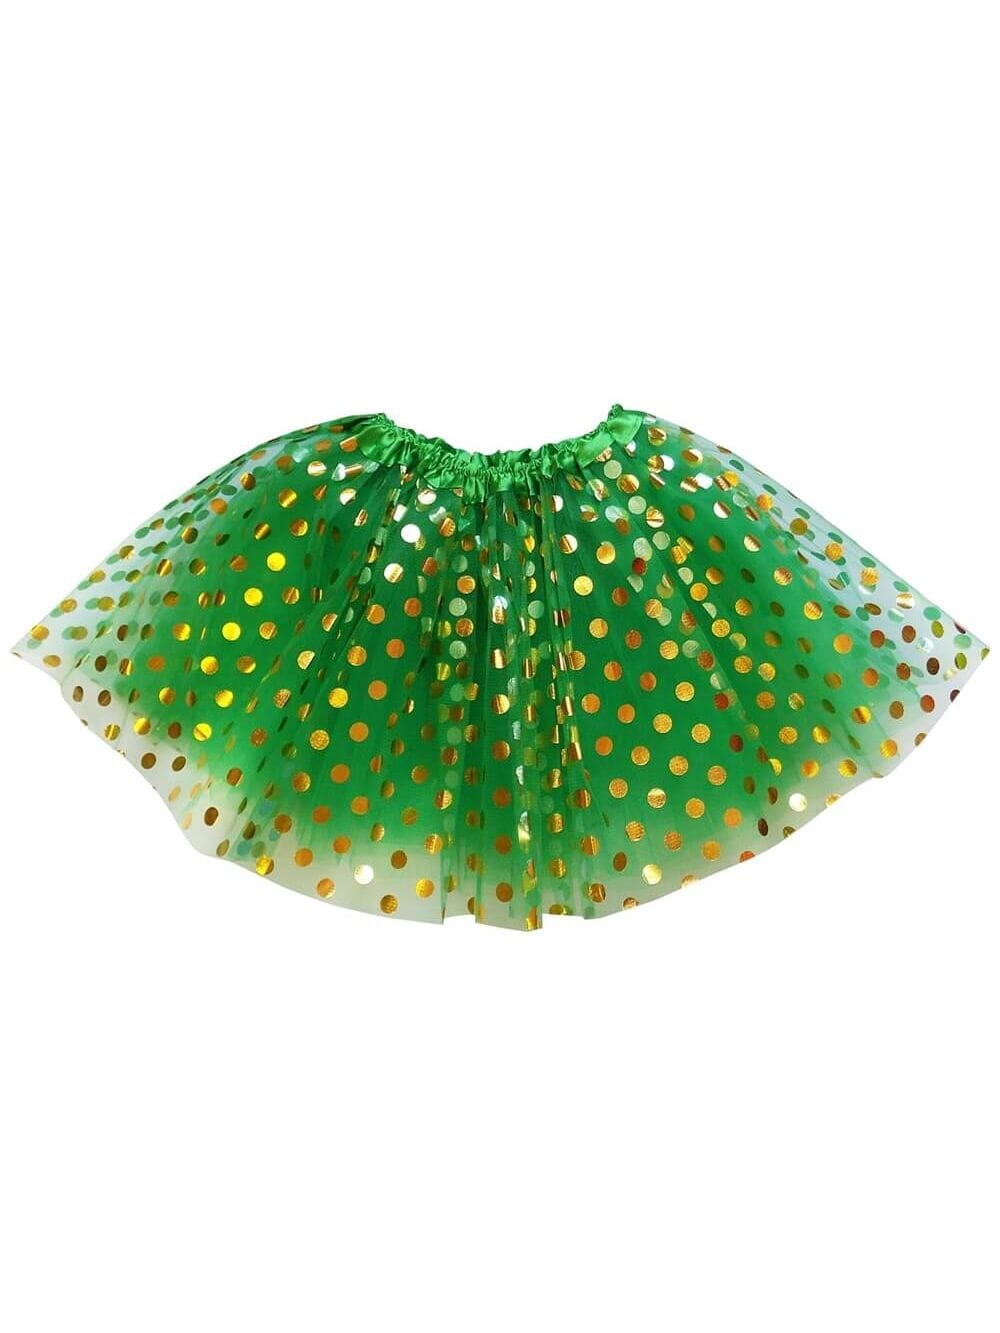 Green and Gold Polka Dot Tutu Skirt Costume for Girls, Women, Plus - Sydney So Sweet